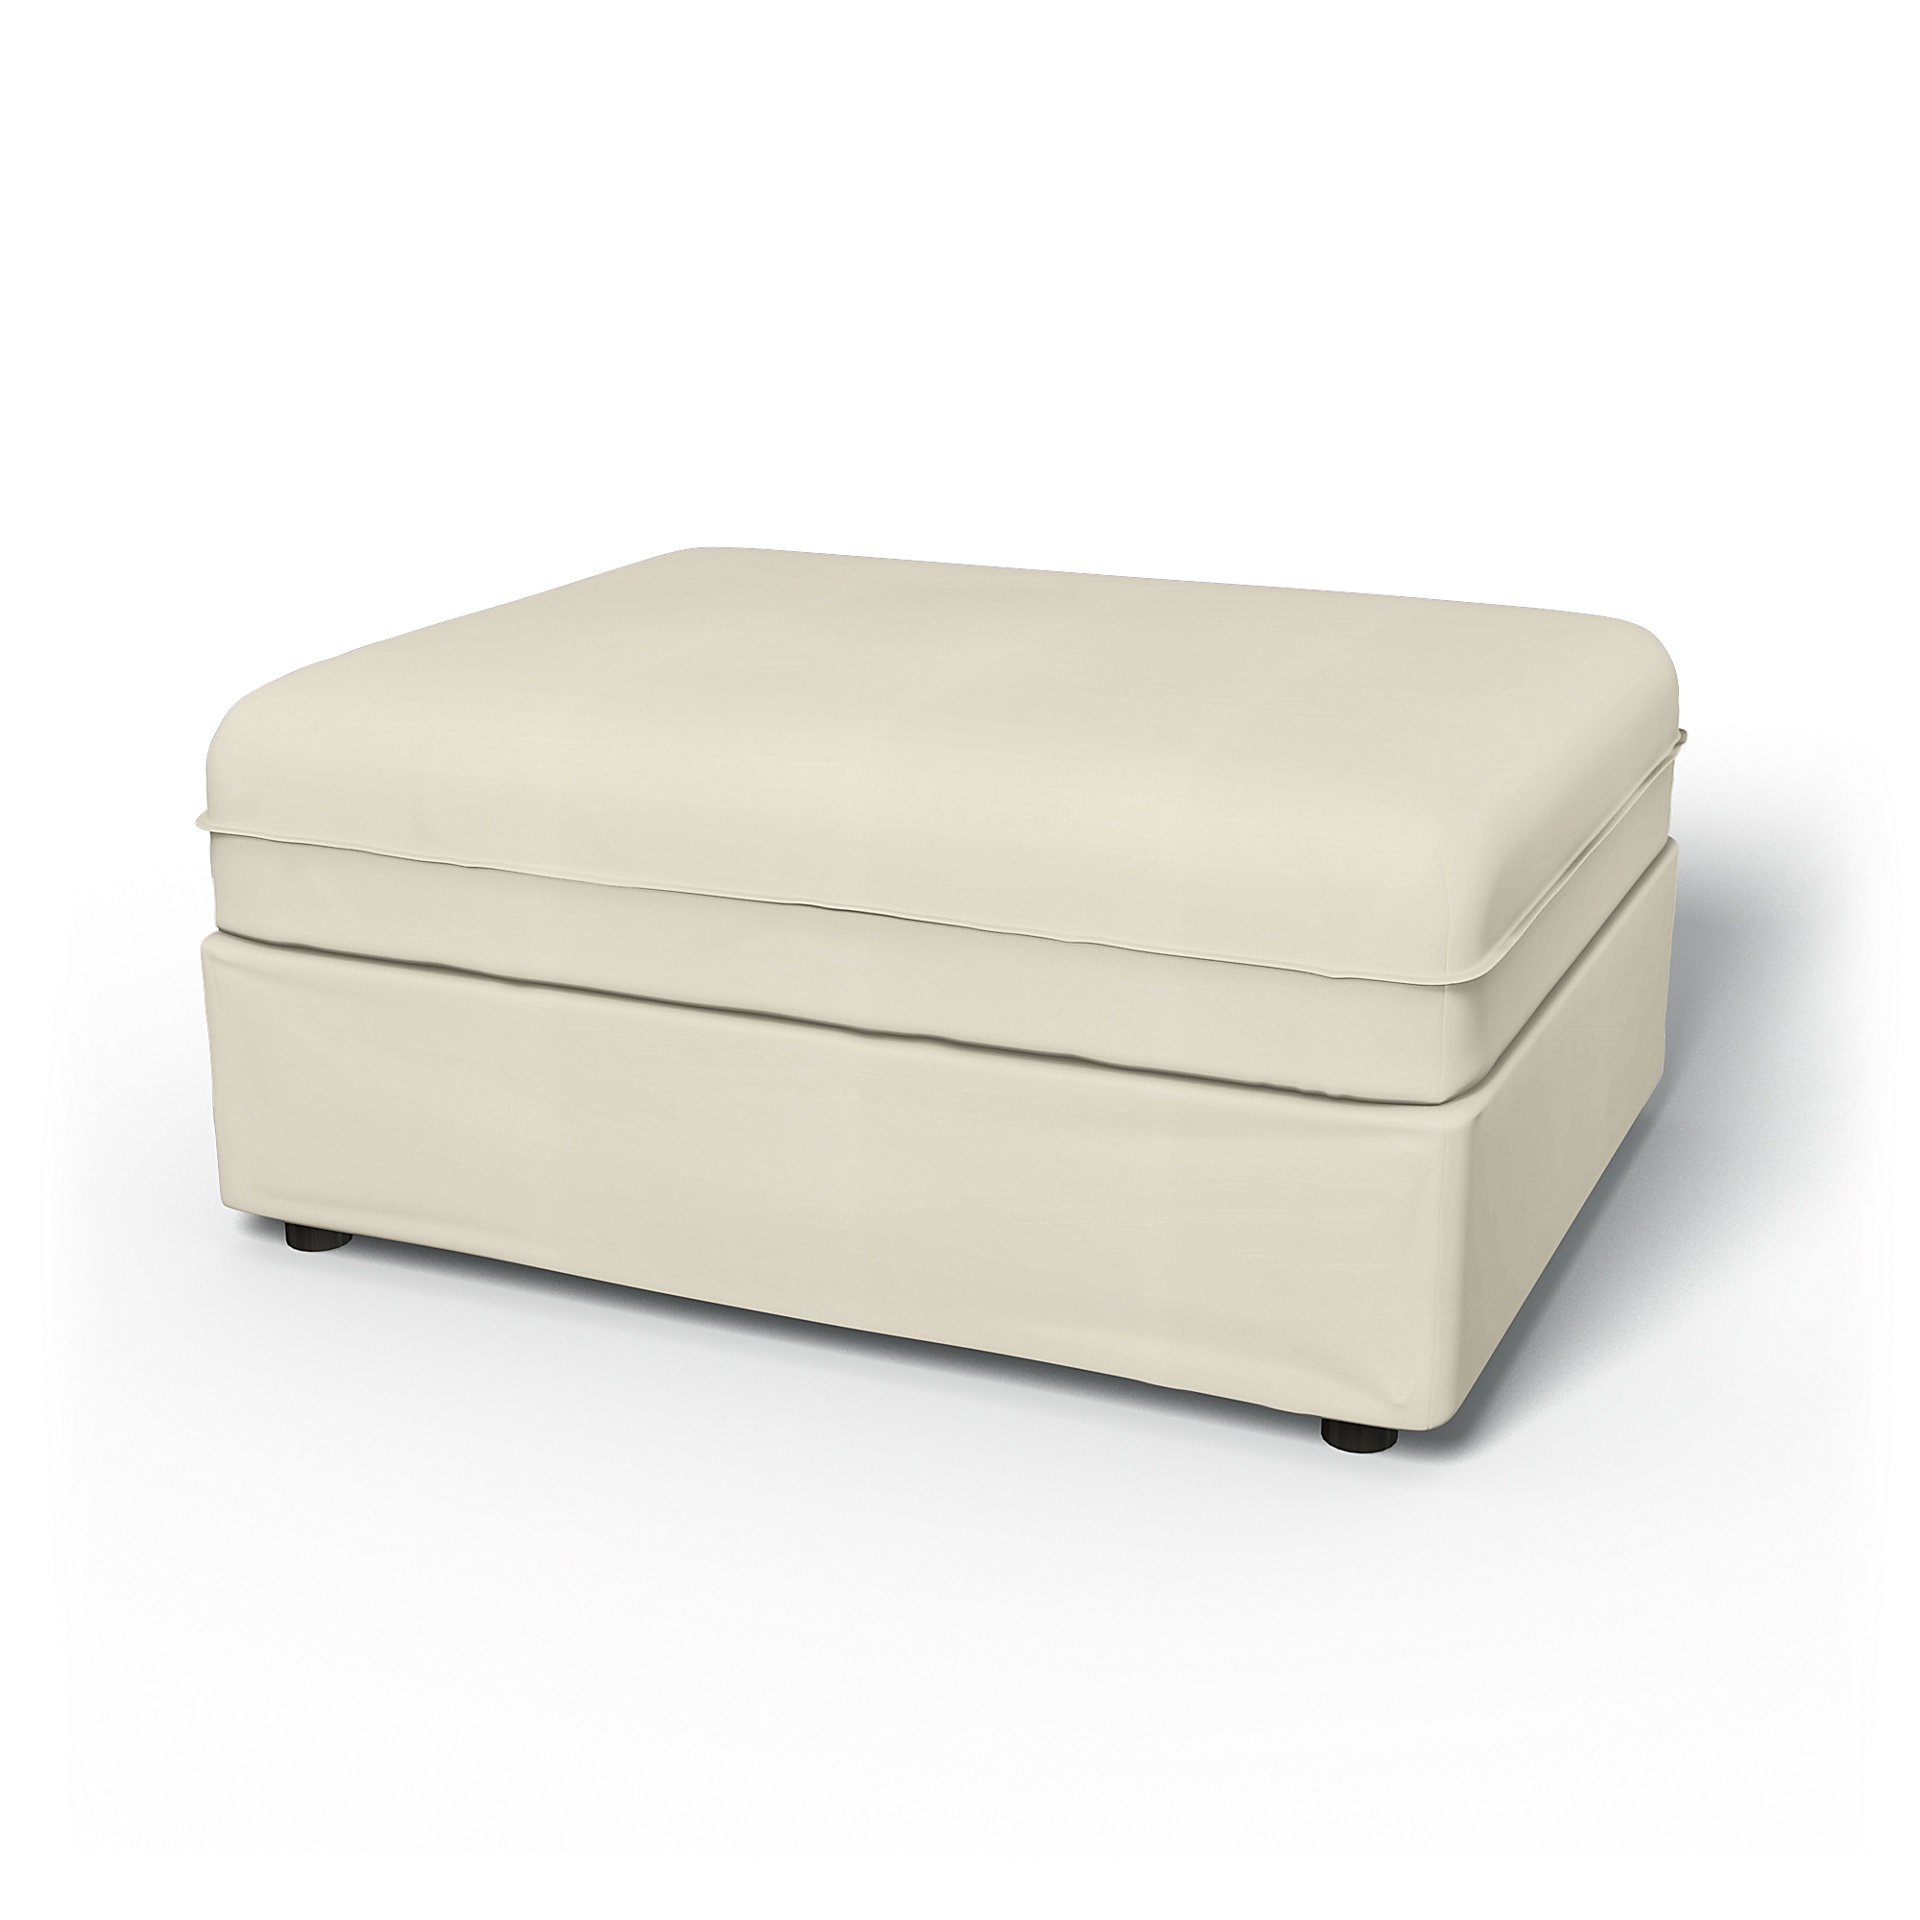 IKEA - Vallentuna Seat Module Cover 100x80cm 39x32in, Tofu, Cotton - Bemz